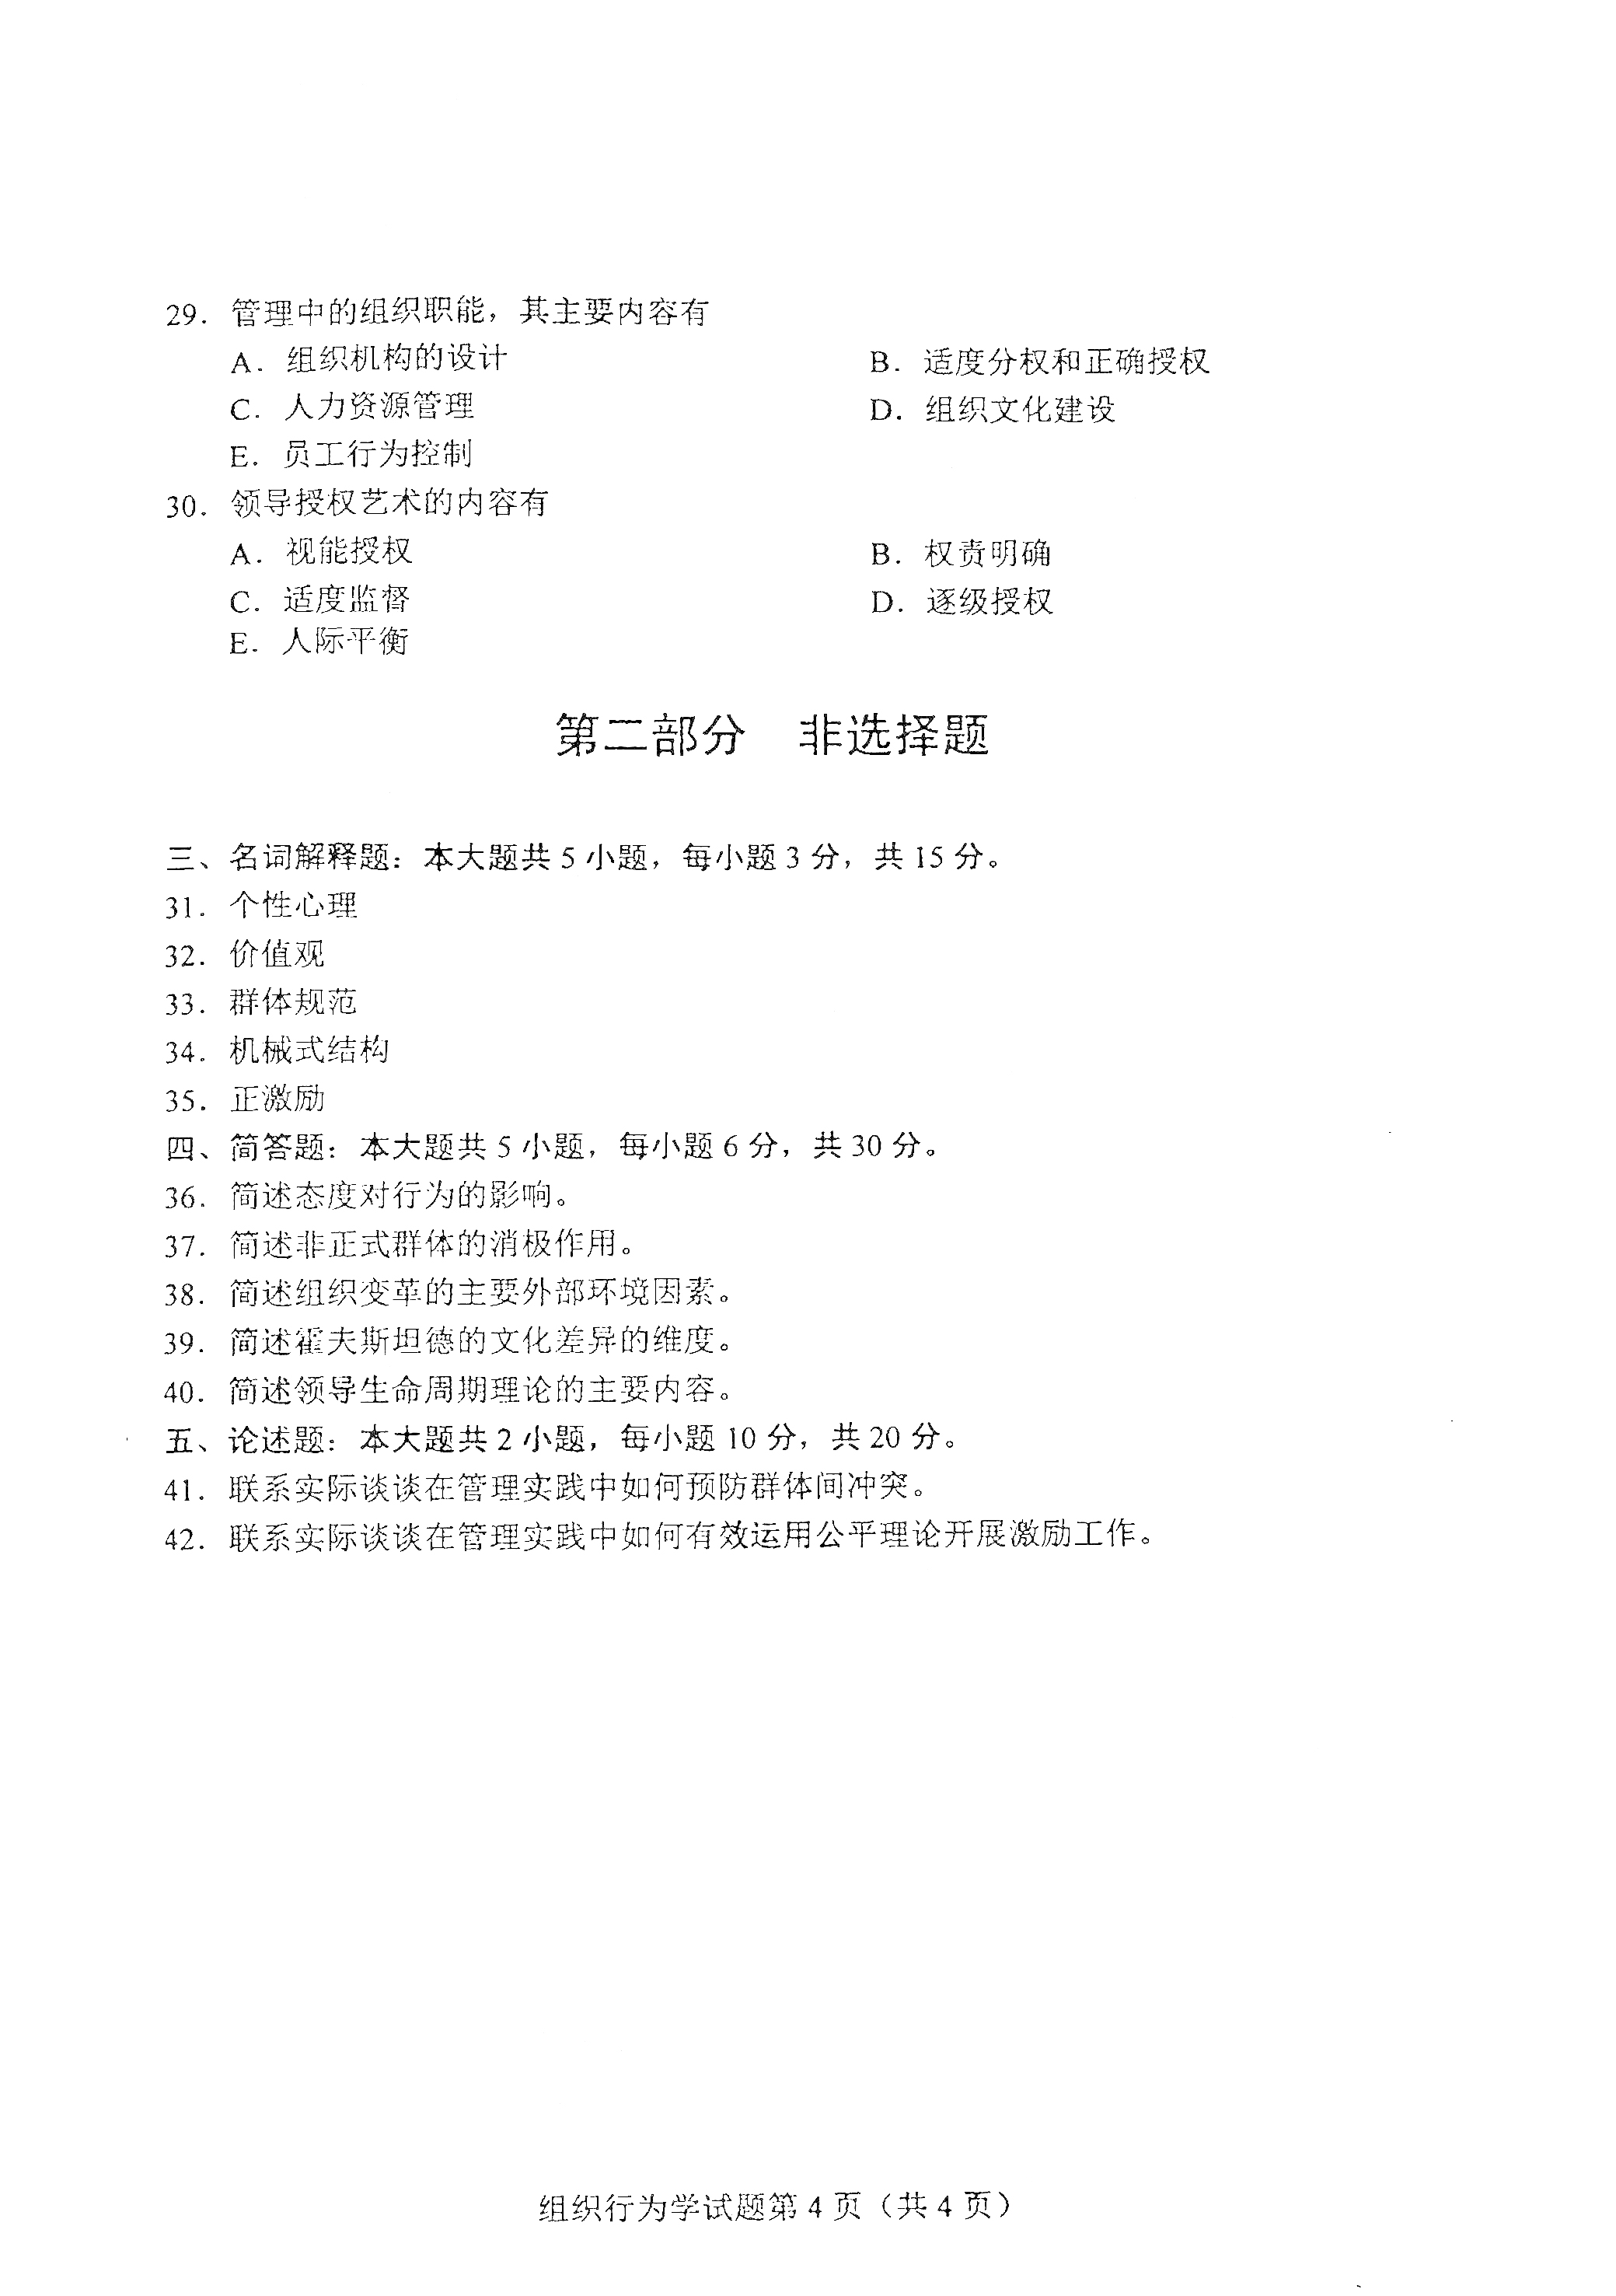 贵州自考2021年4月自考00152组织行为学真题试卷